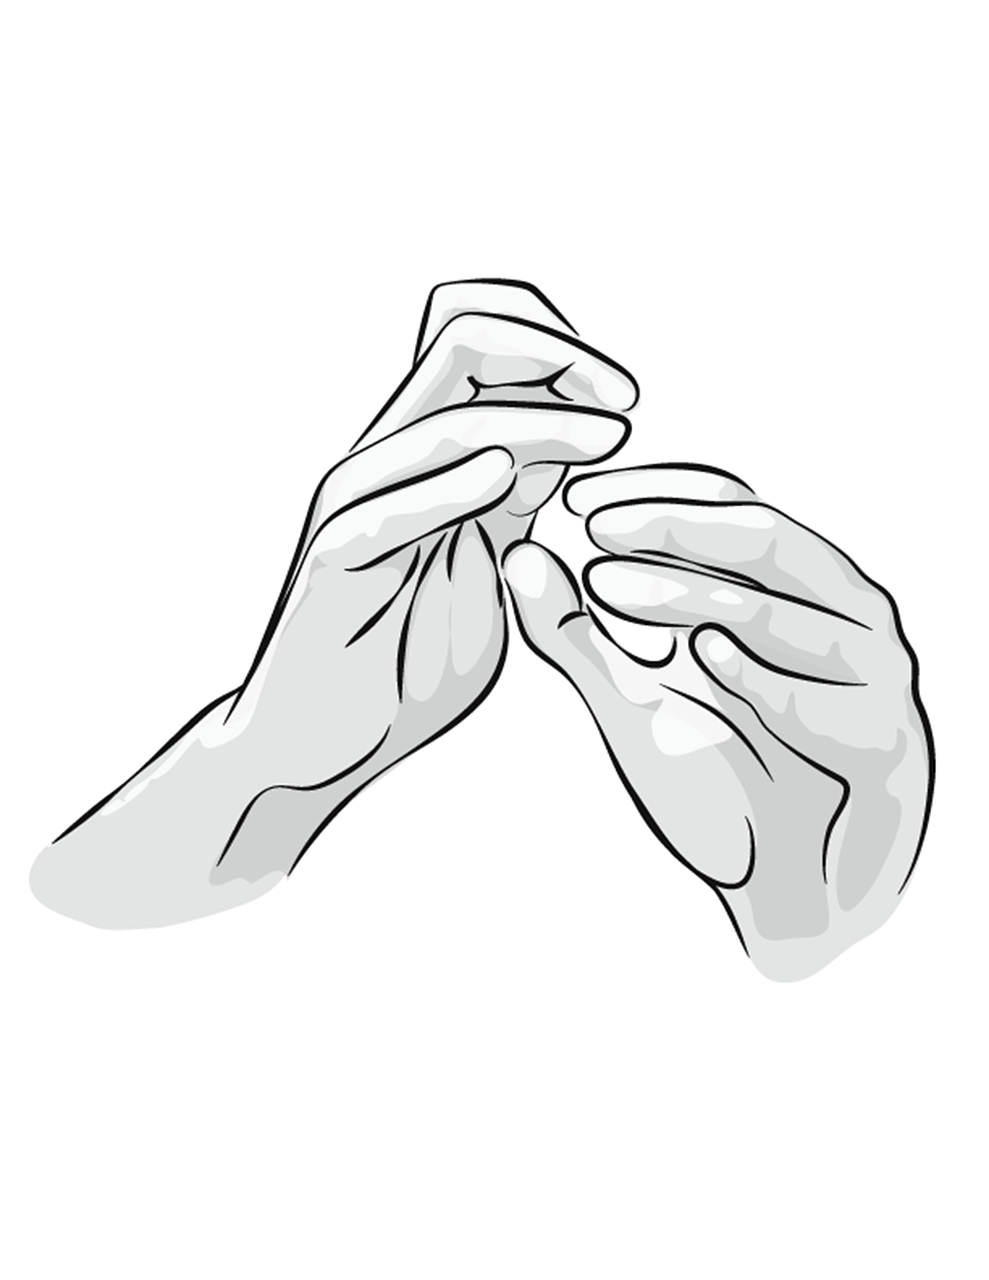 Nadgarstki i dłonie muzyka, fot: Victoria Ratcliffe, Pixabay